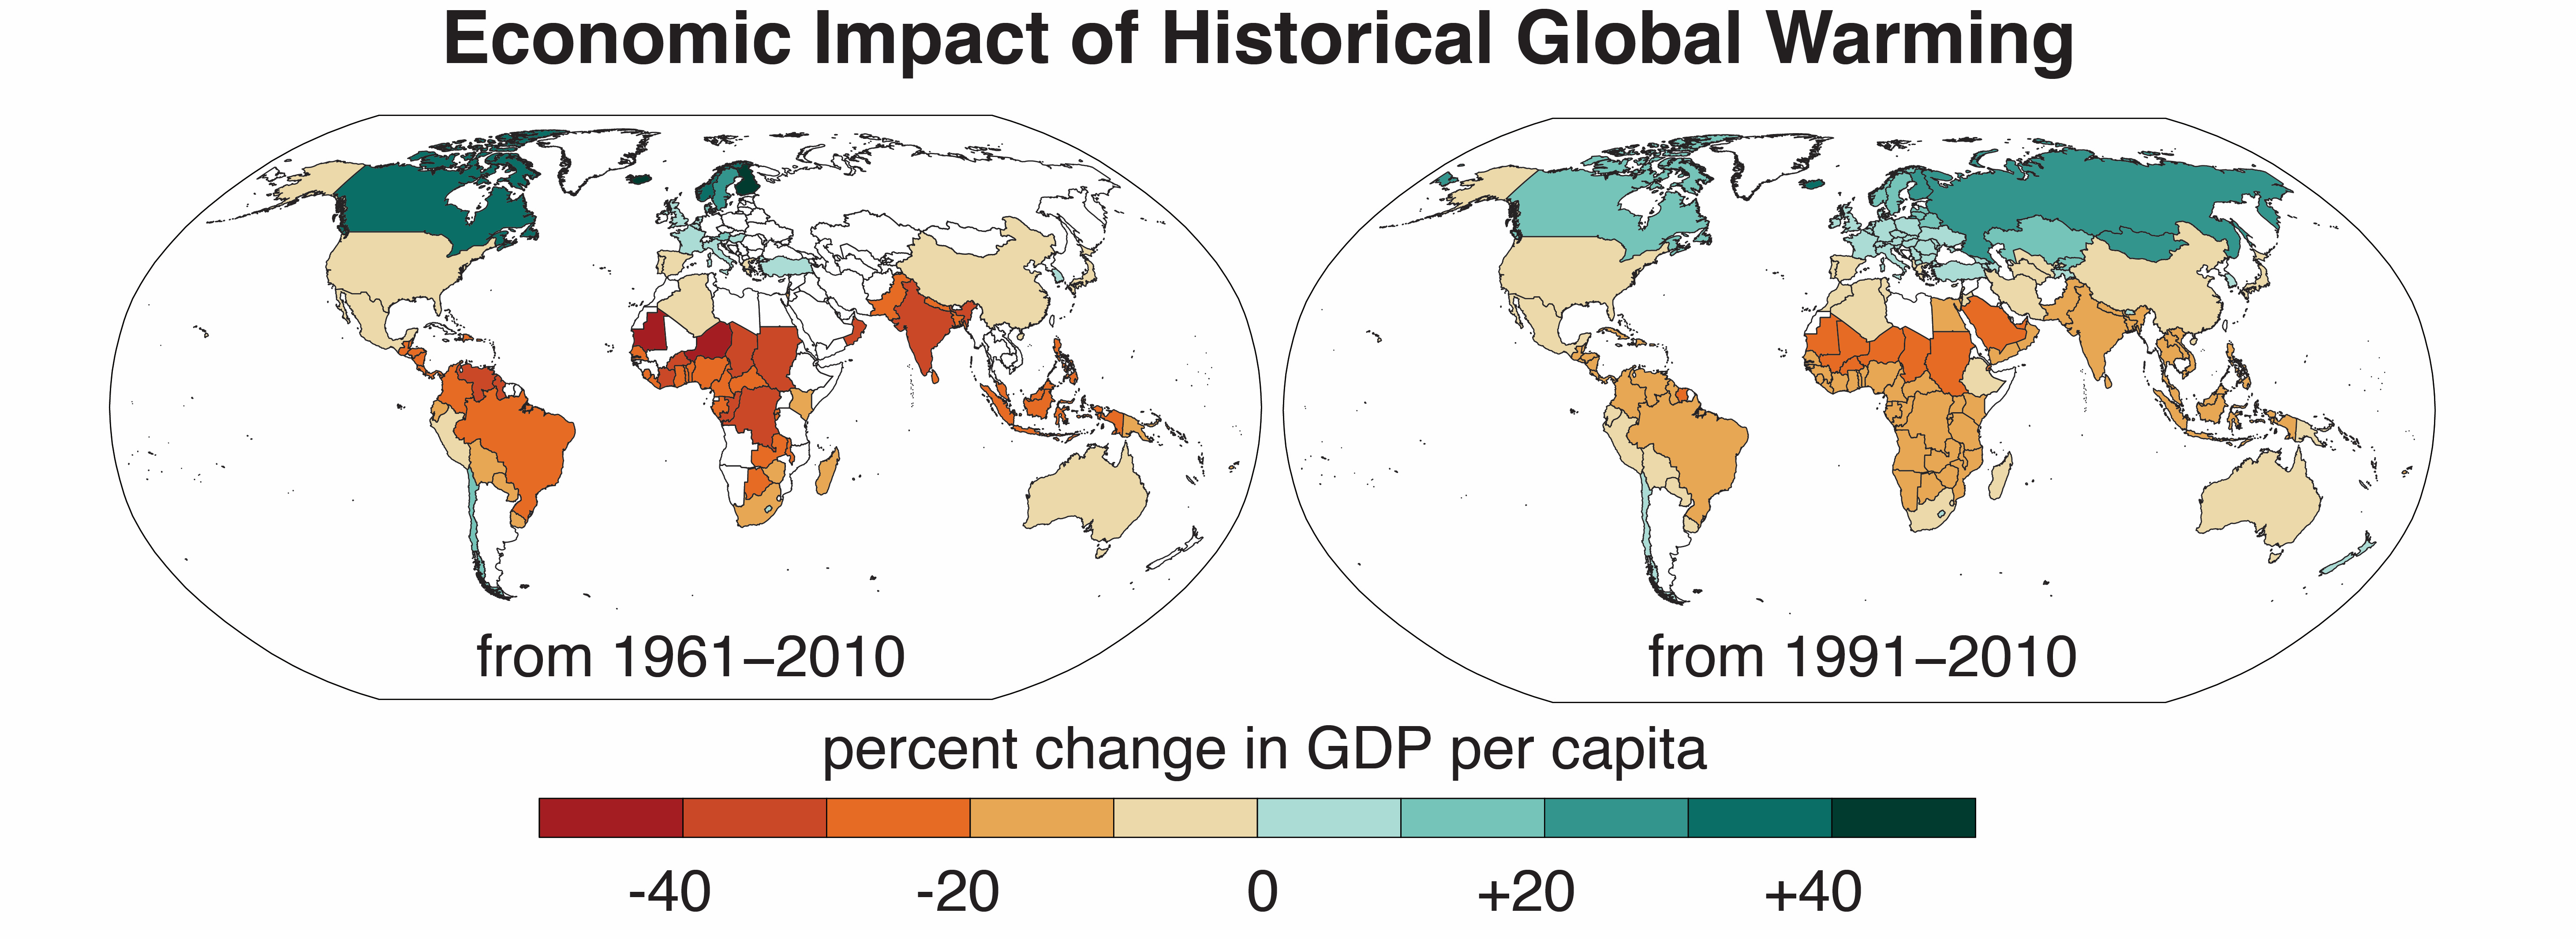 El mapa de la izquierda muestra los países en los que el PIB per cápita aumentó o disminuyó como resultado del calentamiento global entre 1961 y 2010. El mapa de la derecha muestra la misma información en 1991, que incorpora datos de más países. (Crédito de la imagen: Noah Diffenbaugh y Marshall Burke).